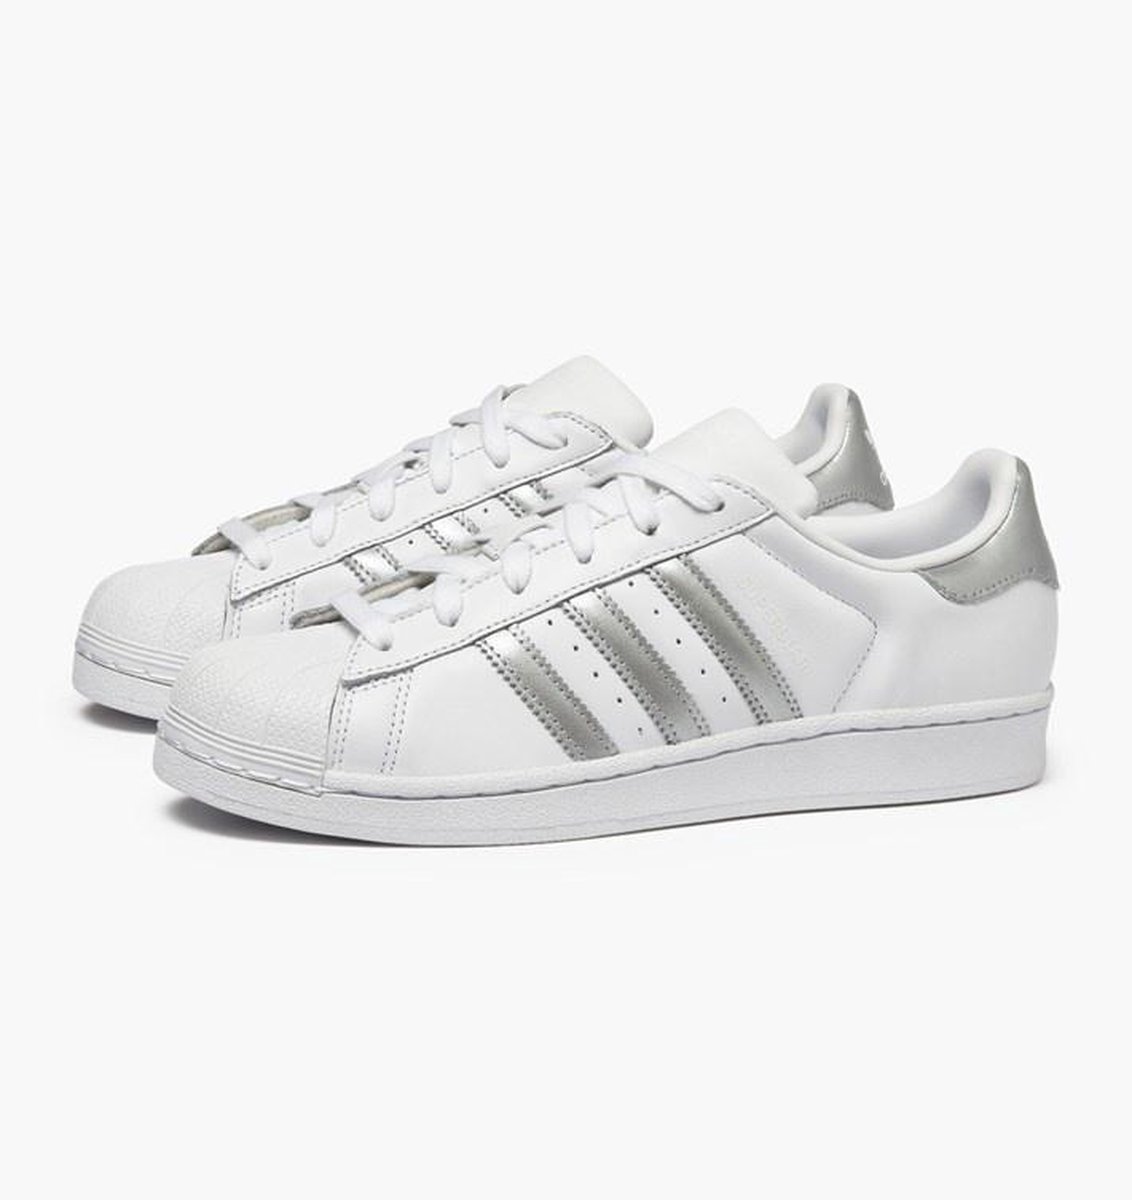 Adidas Superstar Wit / Grijs - Dames Sneaker - D97998 - Maat 36 ...